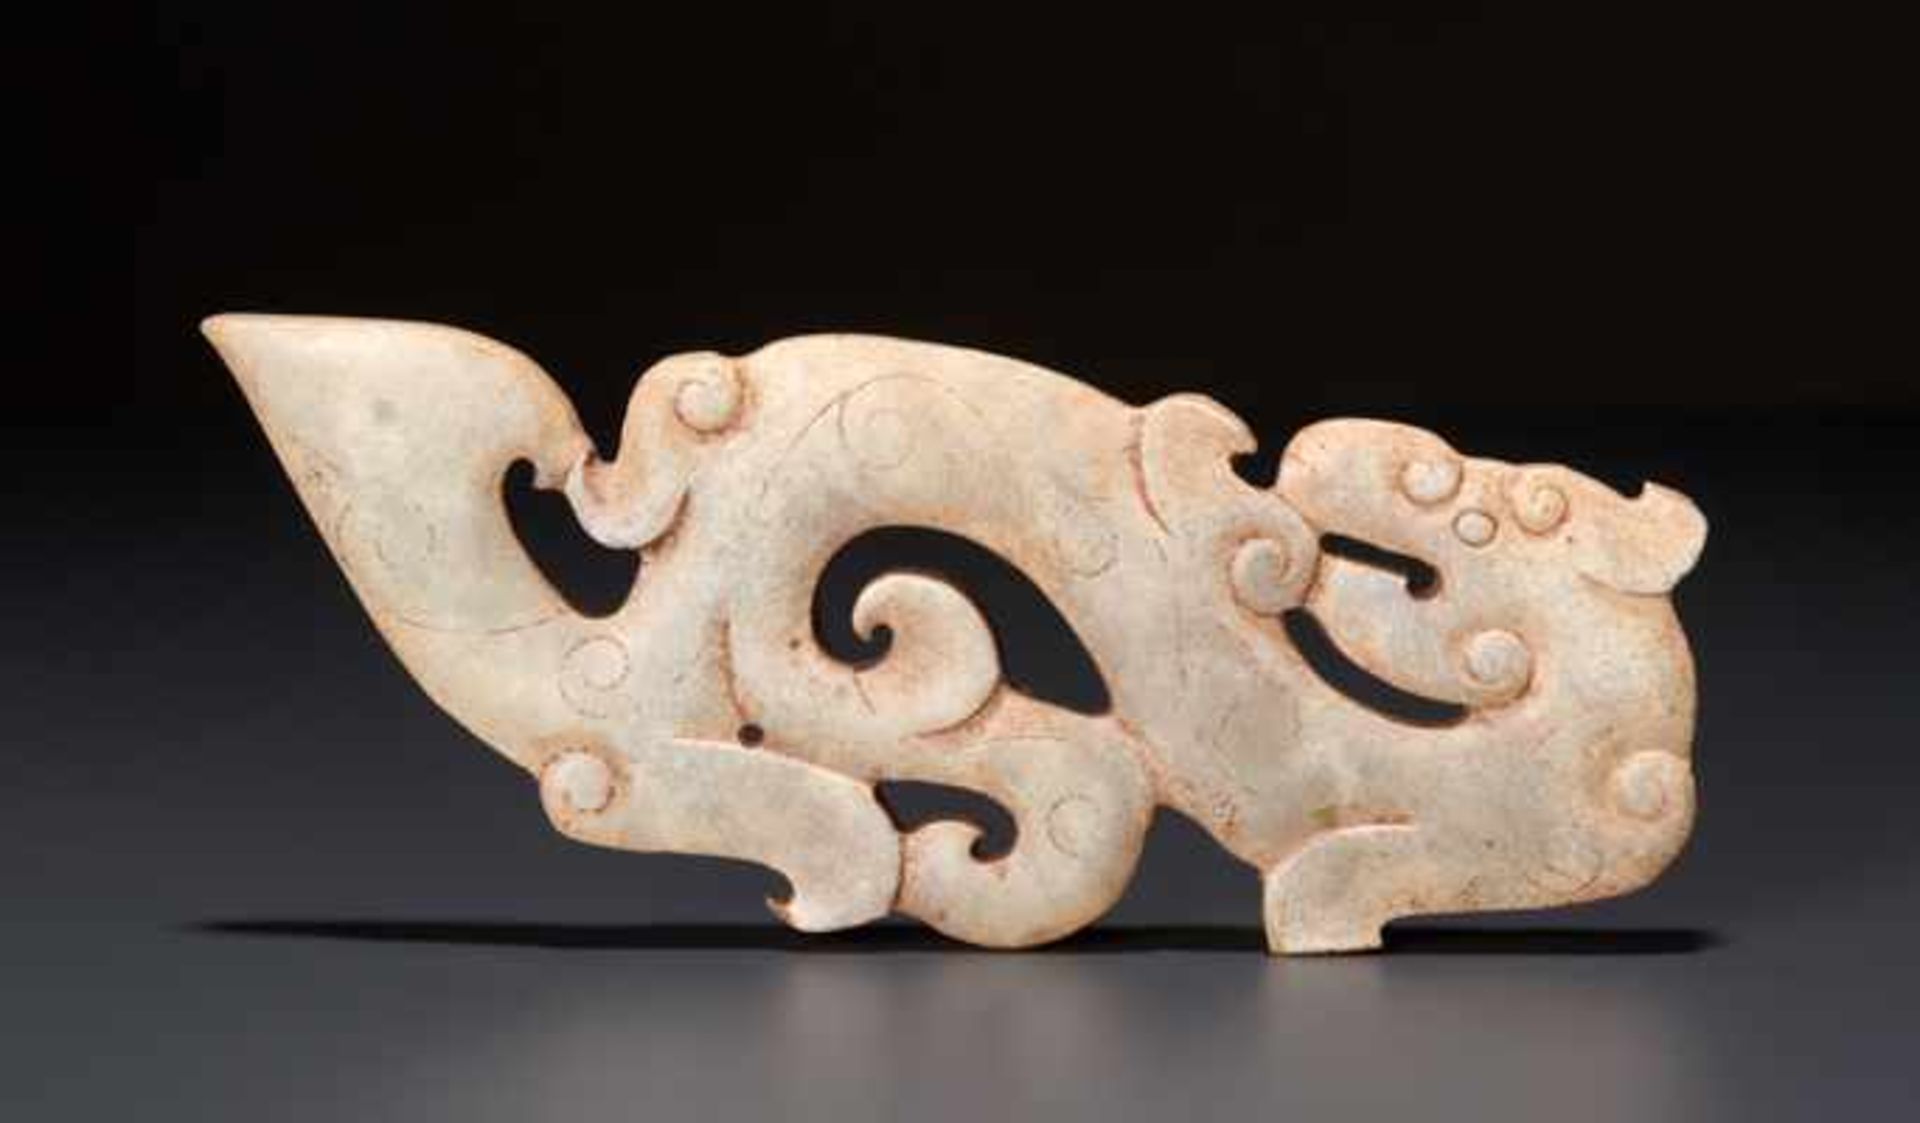 WEISSER KUILONG-DRACHE ALS AMULETT夔龍形玉雕護身符。中國，東周代，公元前5世紀。寬10.5厘米，厚約0.3厘米。維也納私人舊藏。Bezeichnend für